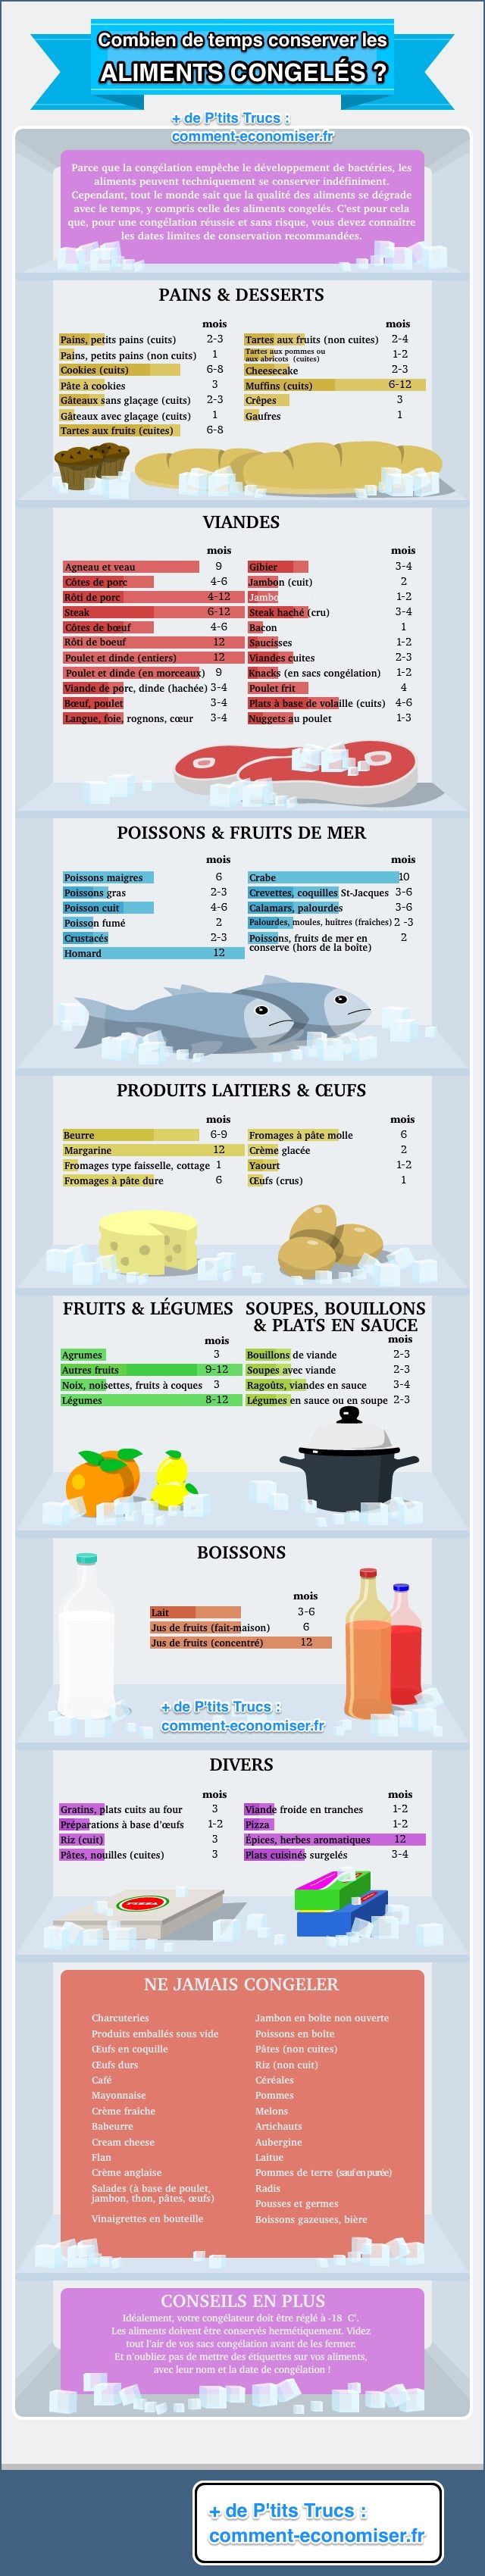 La infografia de quant de temps podeu mantenir els aliments al congelador